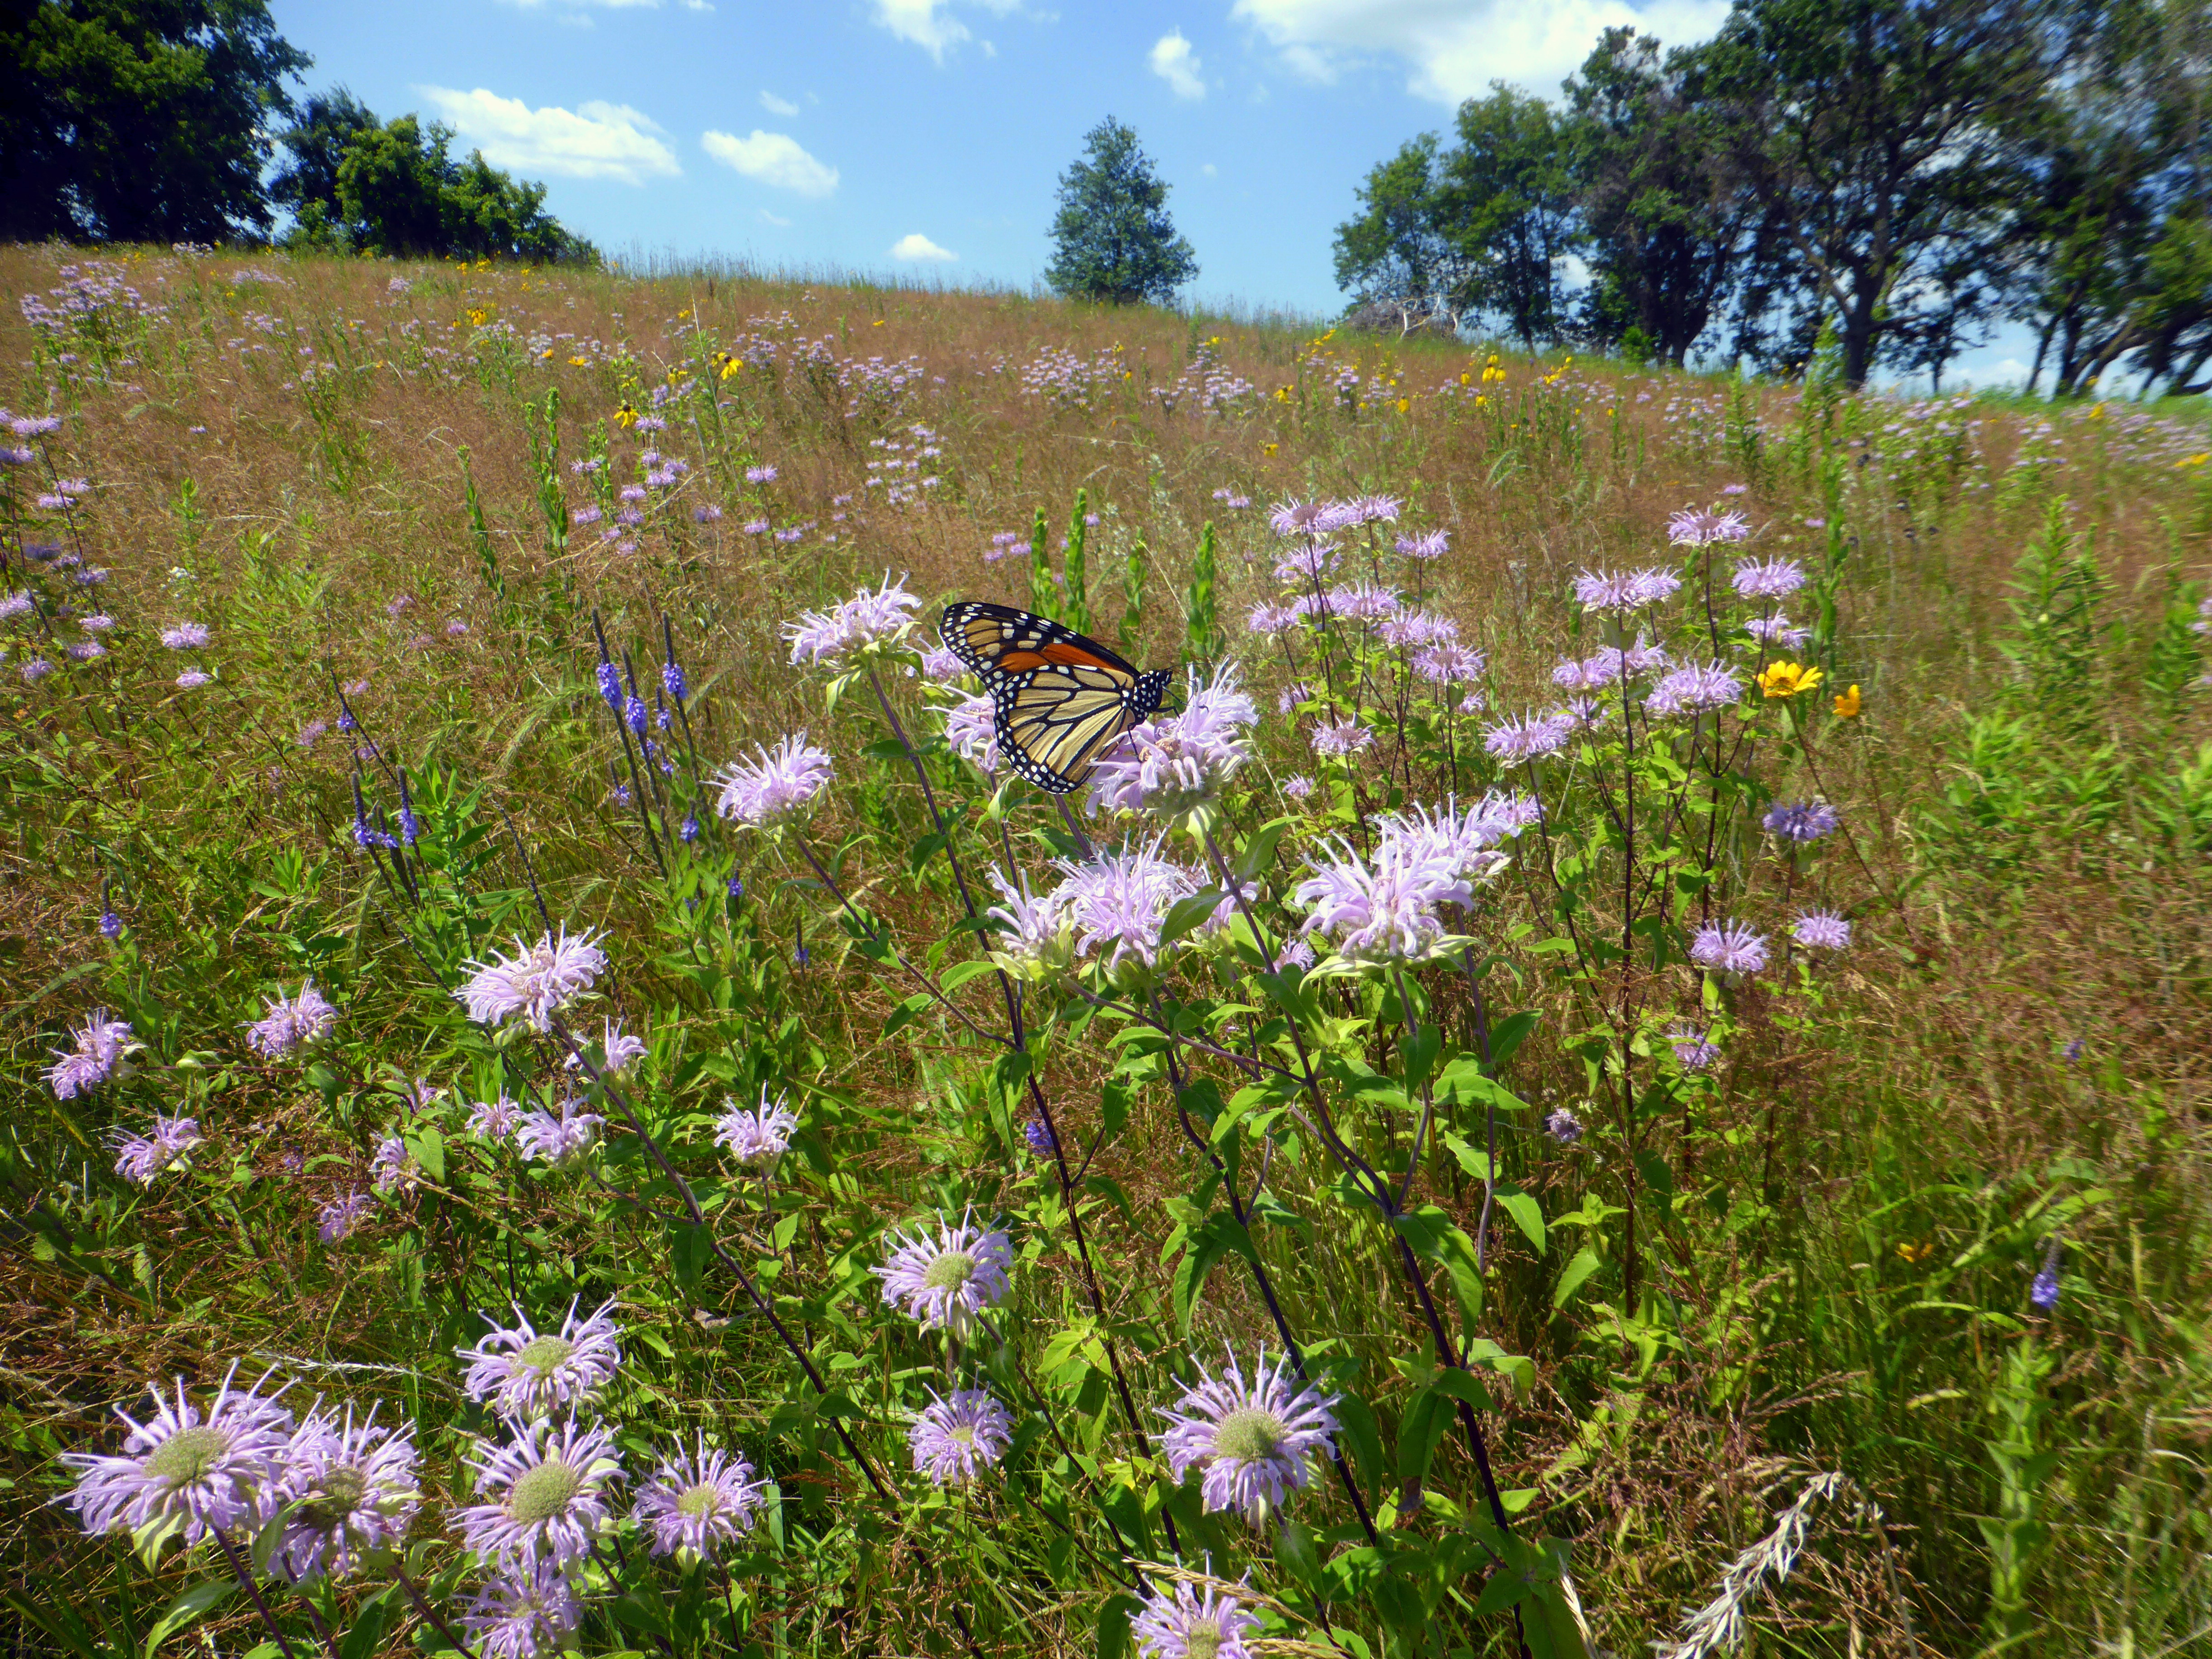 A monarch alights on purple flowers in a verdant meadow.